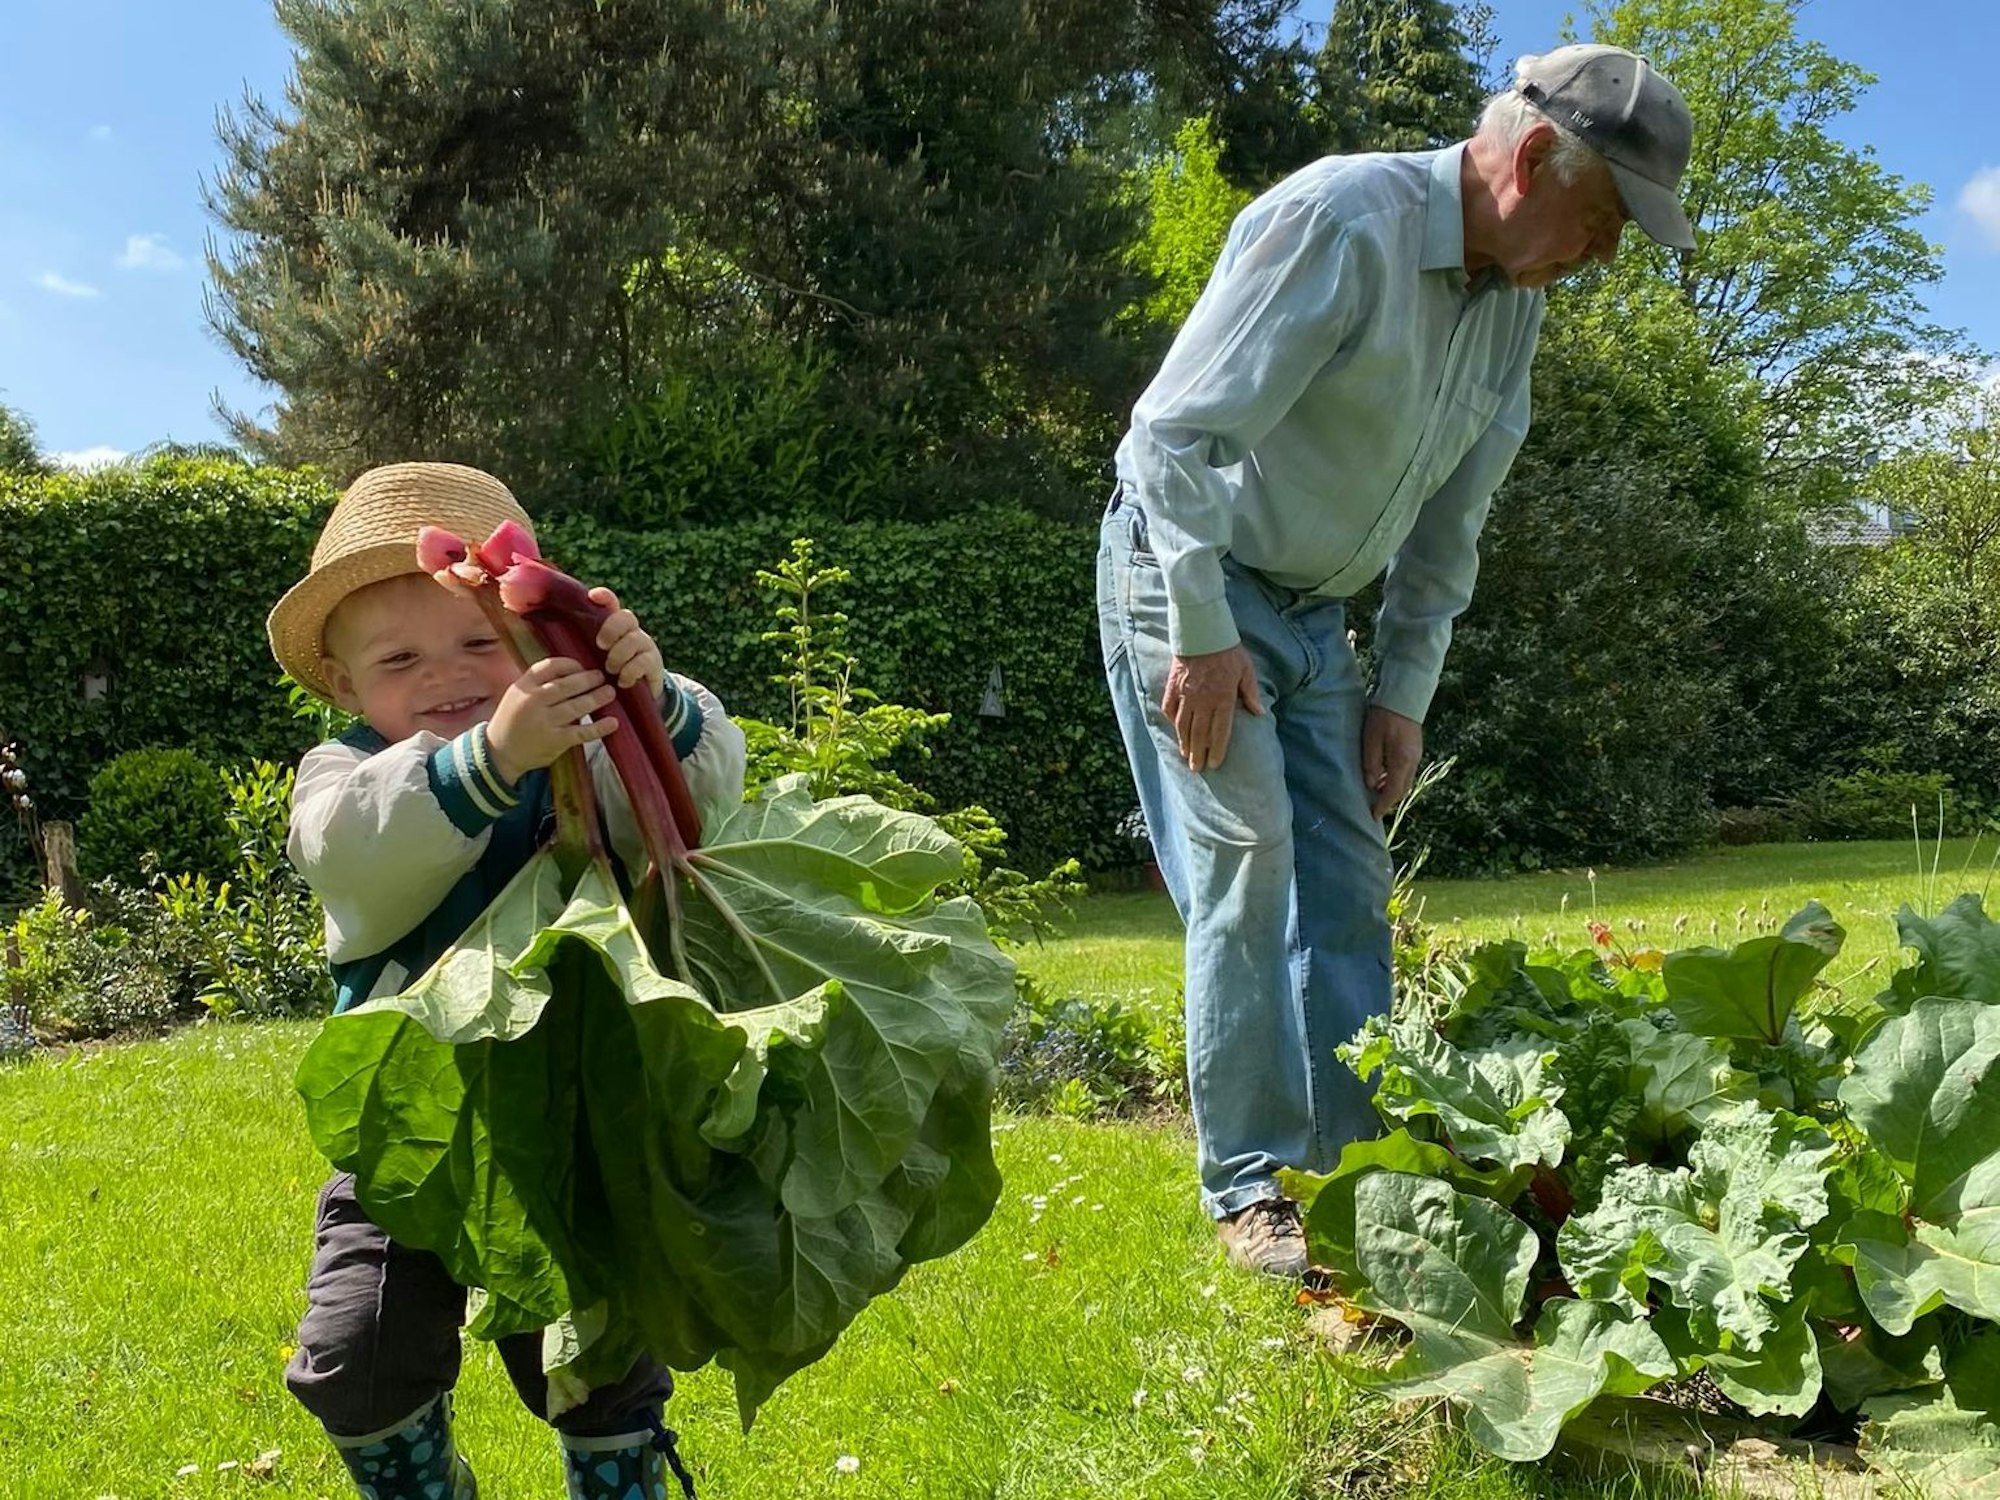 Ein kleiner Junge mit Sonnenhut auf dem Kopf hält große Rhabarberblätter in der Hand. Im Hintergrund ist sein Opa bei der Gartenarbeit zu sehen.